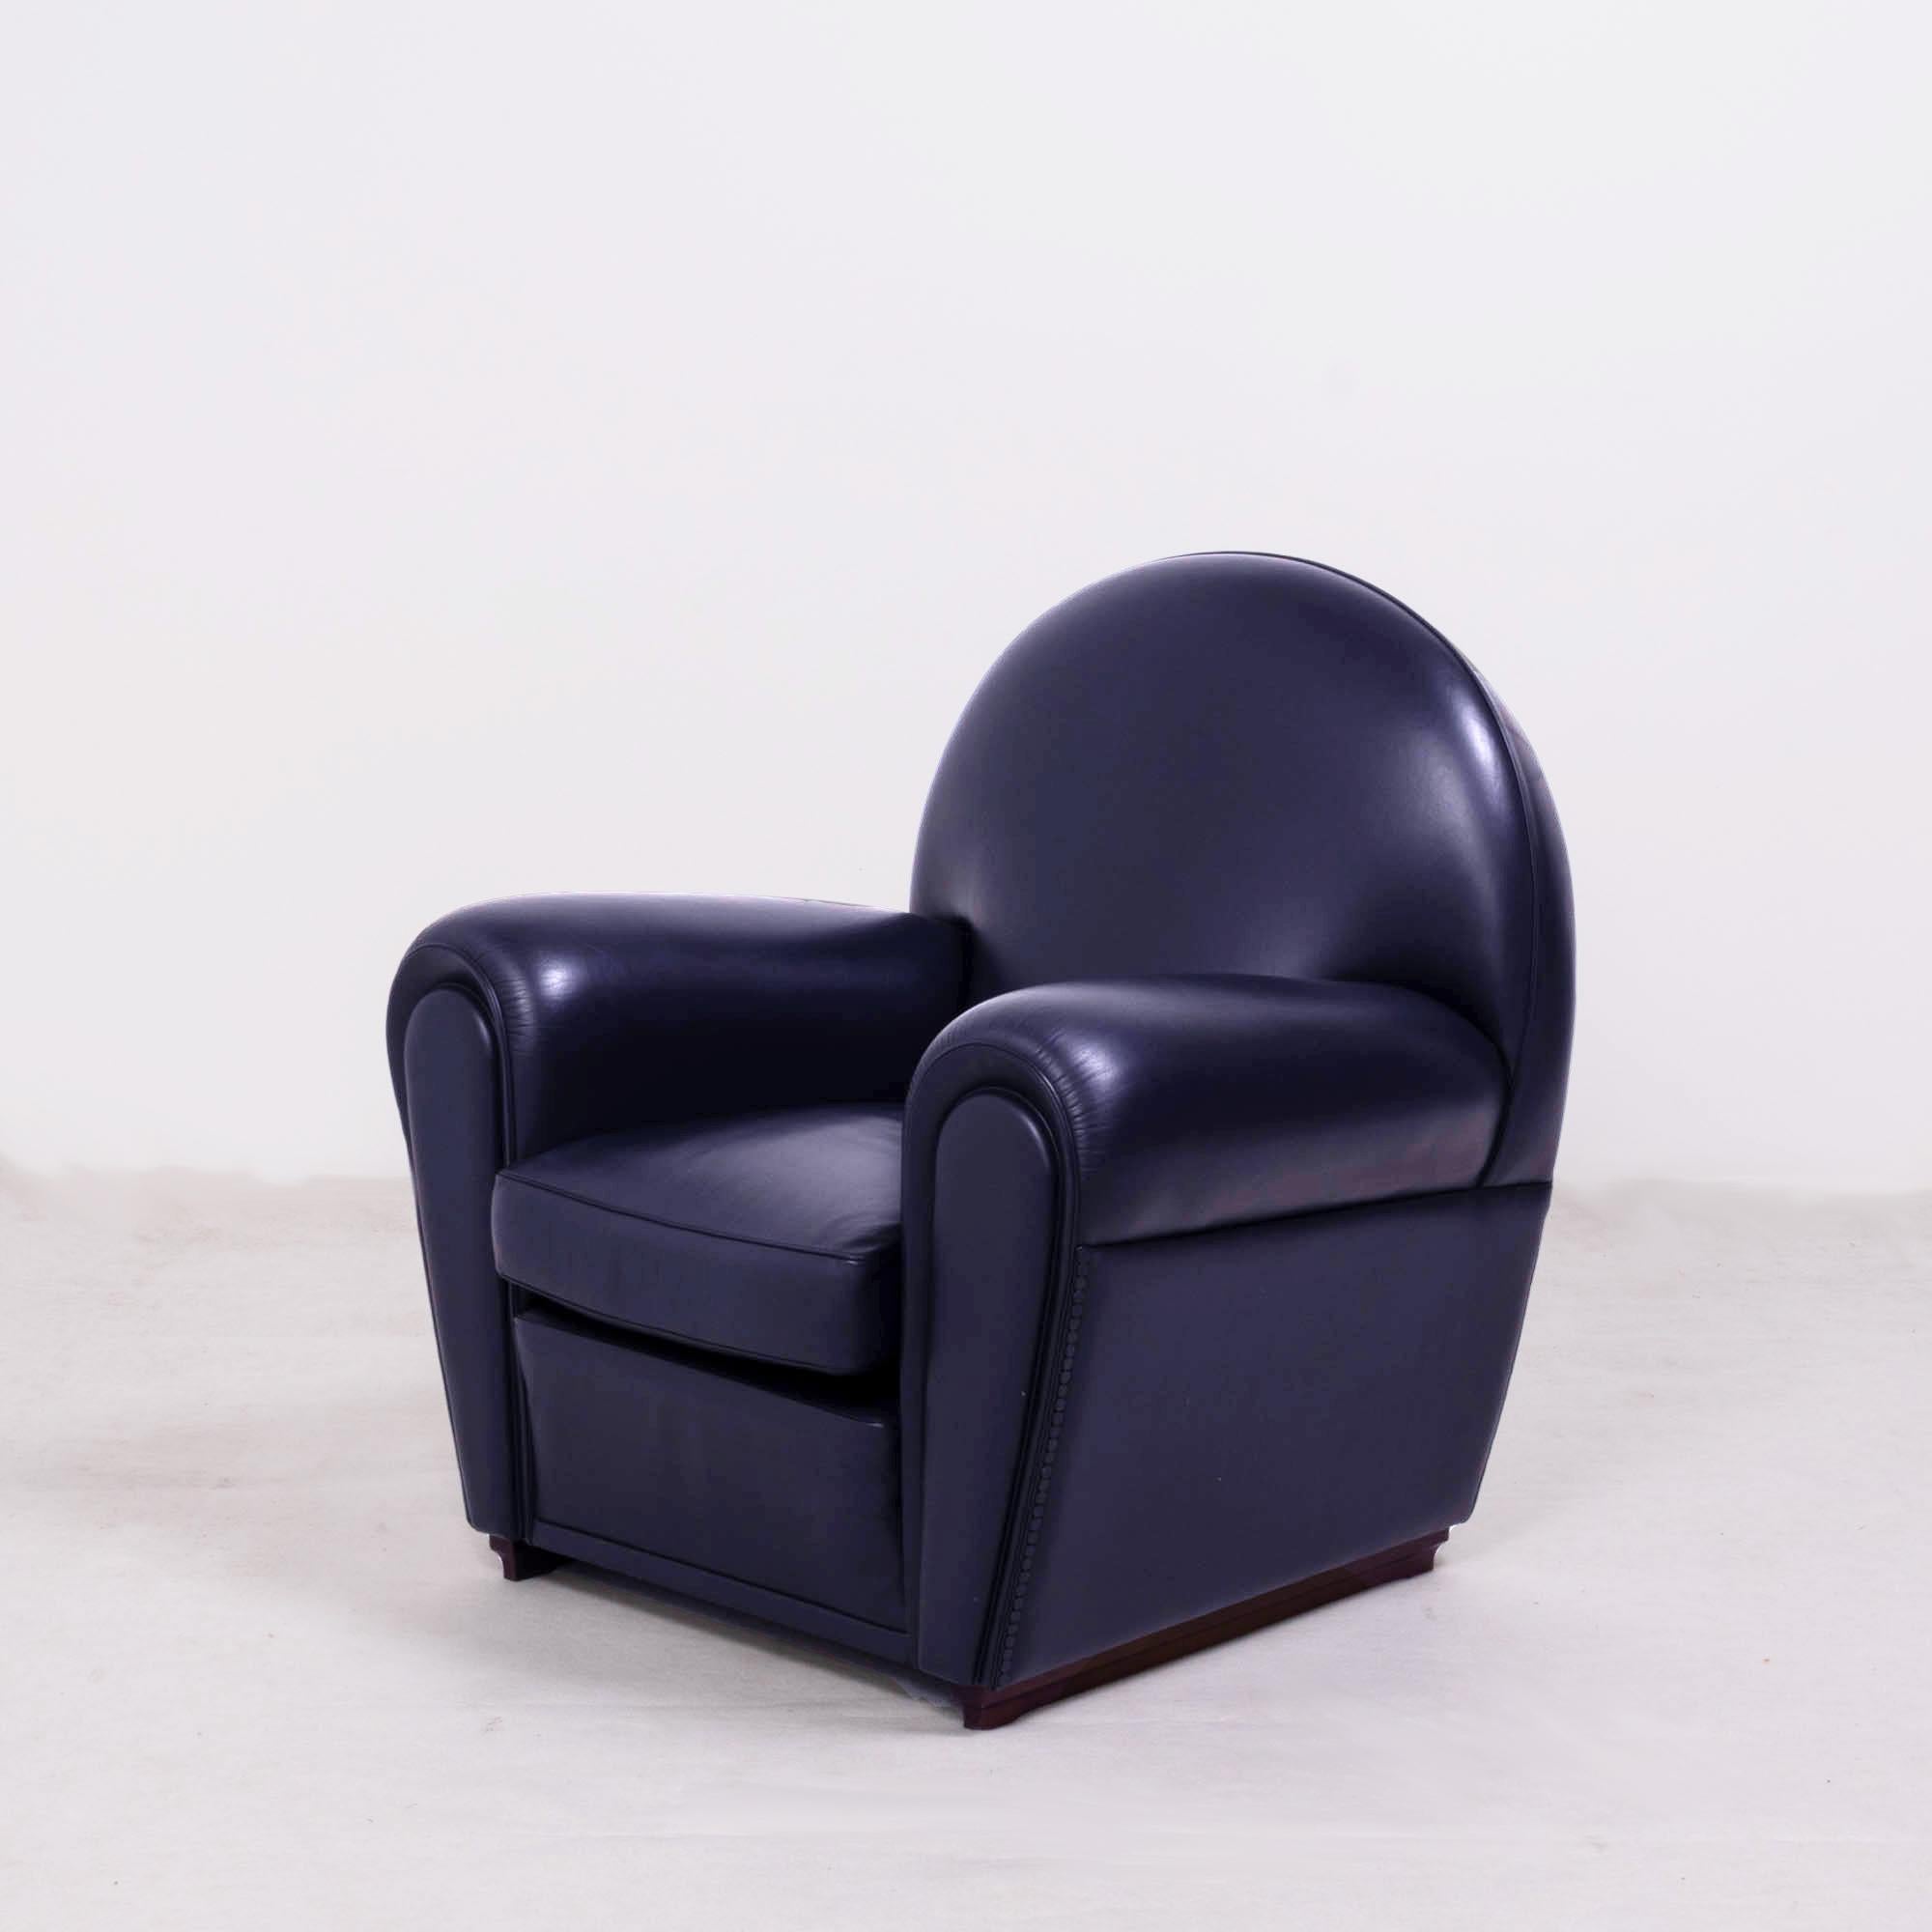 Poltrona Frau, Art Deco style Vanity Fair Black Leather Sofa and armchairs set 2